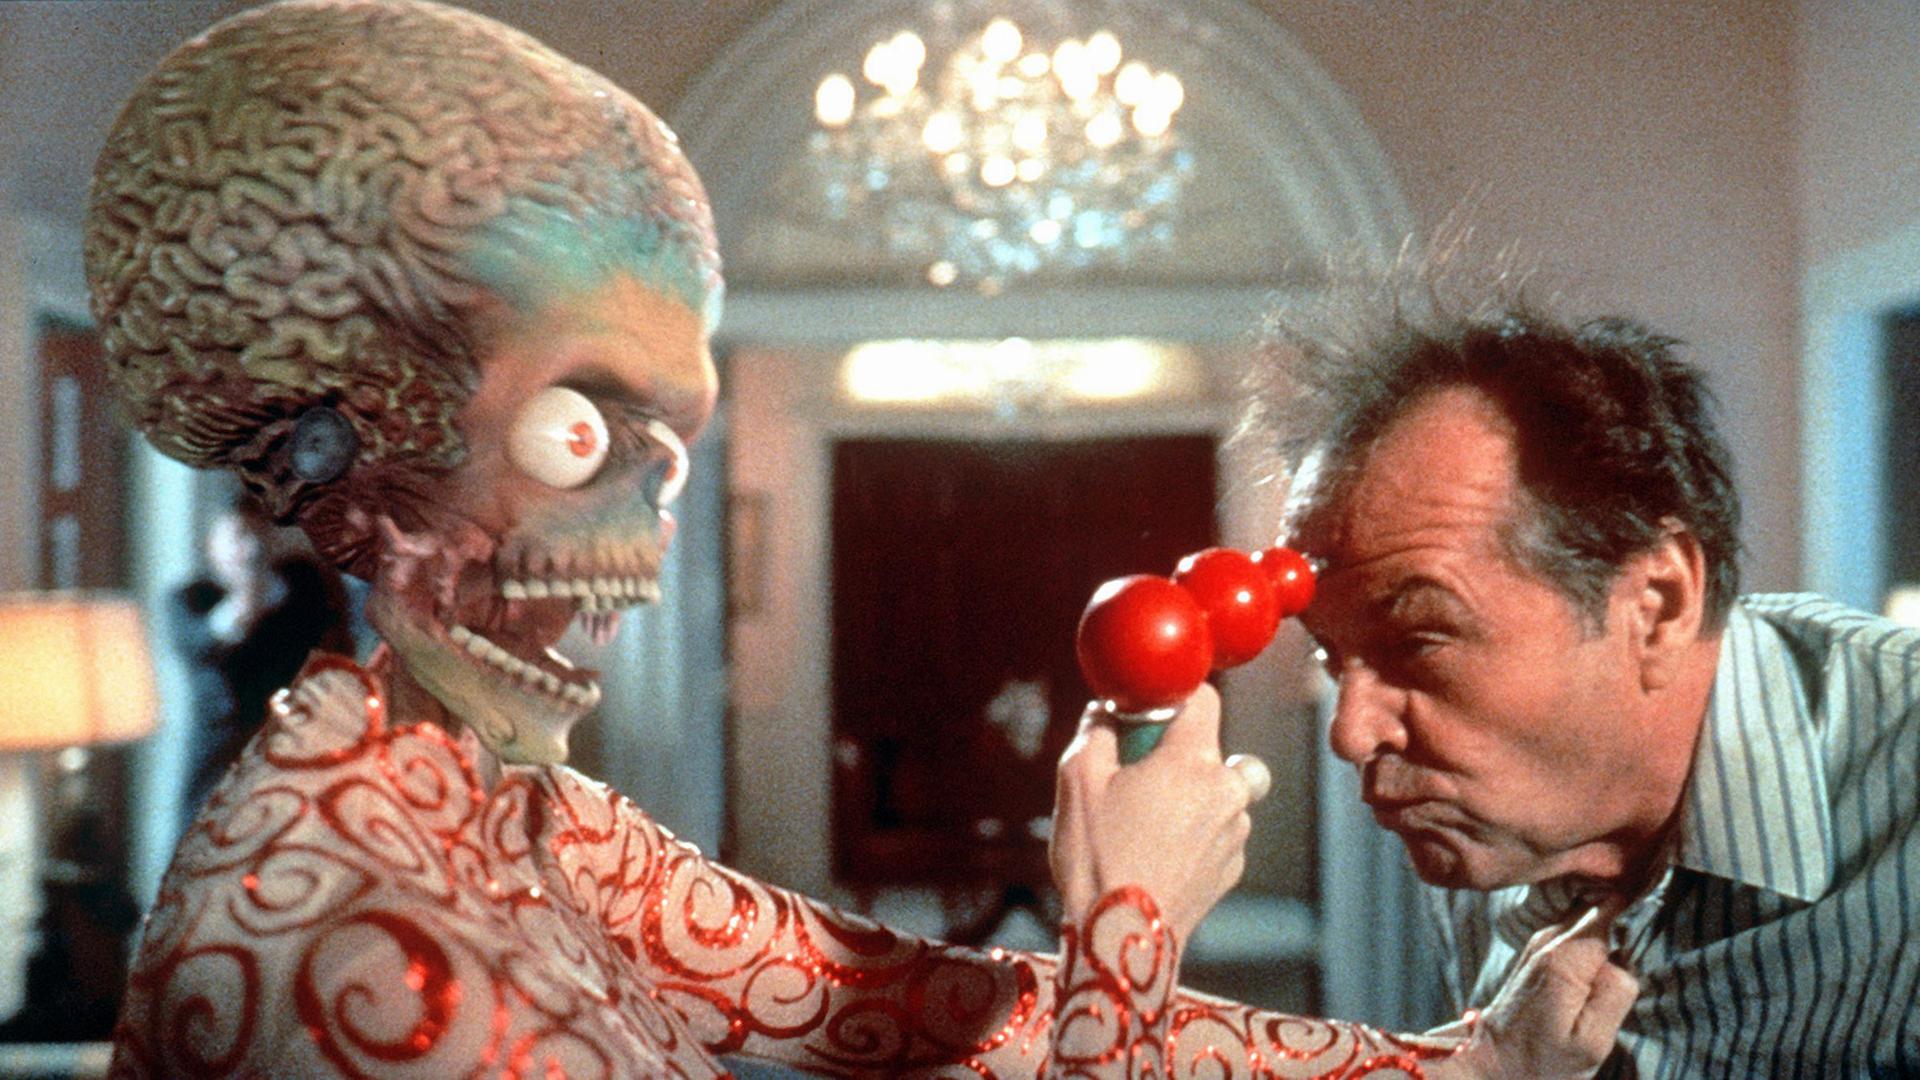 Der amerikanische Präsident James Dale (Jack Nicholson) wird in "Mars Attacks!" von einem Außerirdischen einer recht rüden Behandlung unterzogen (Szenenfoto).